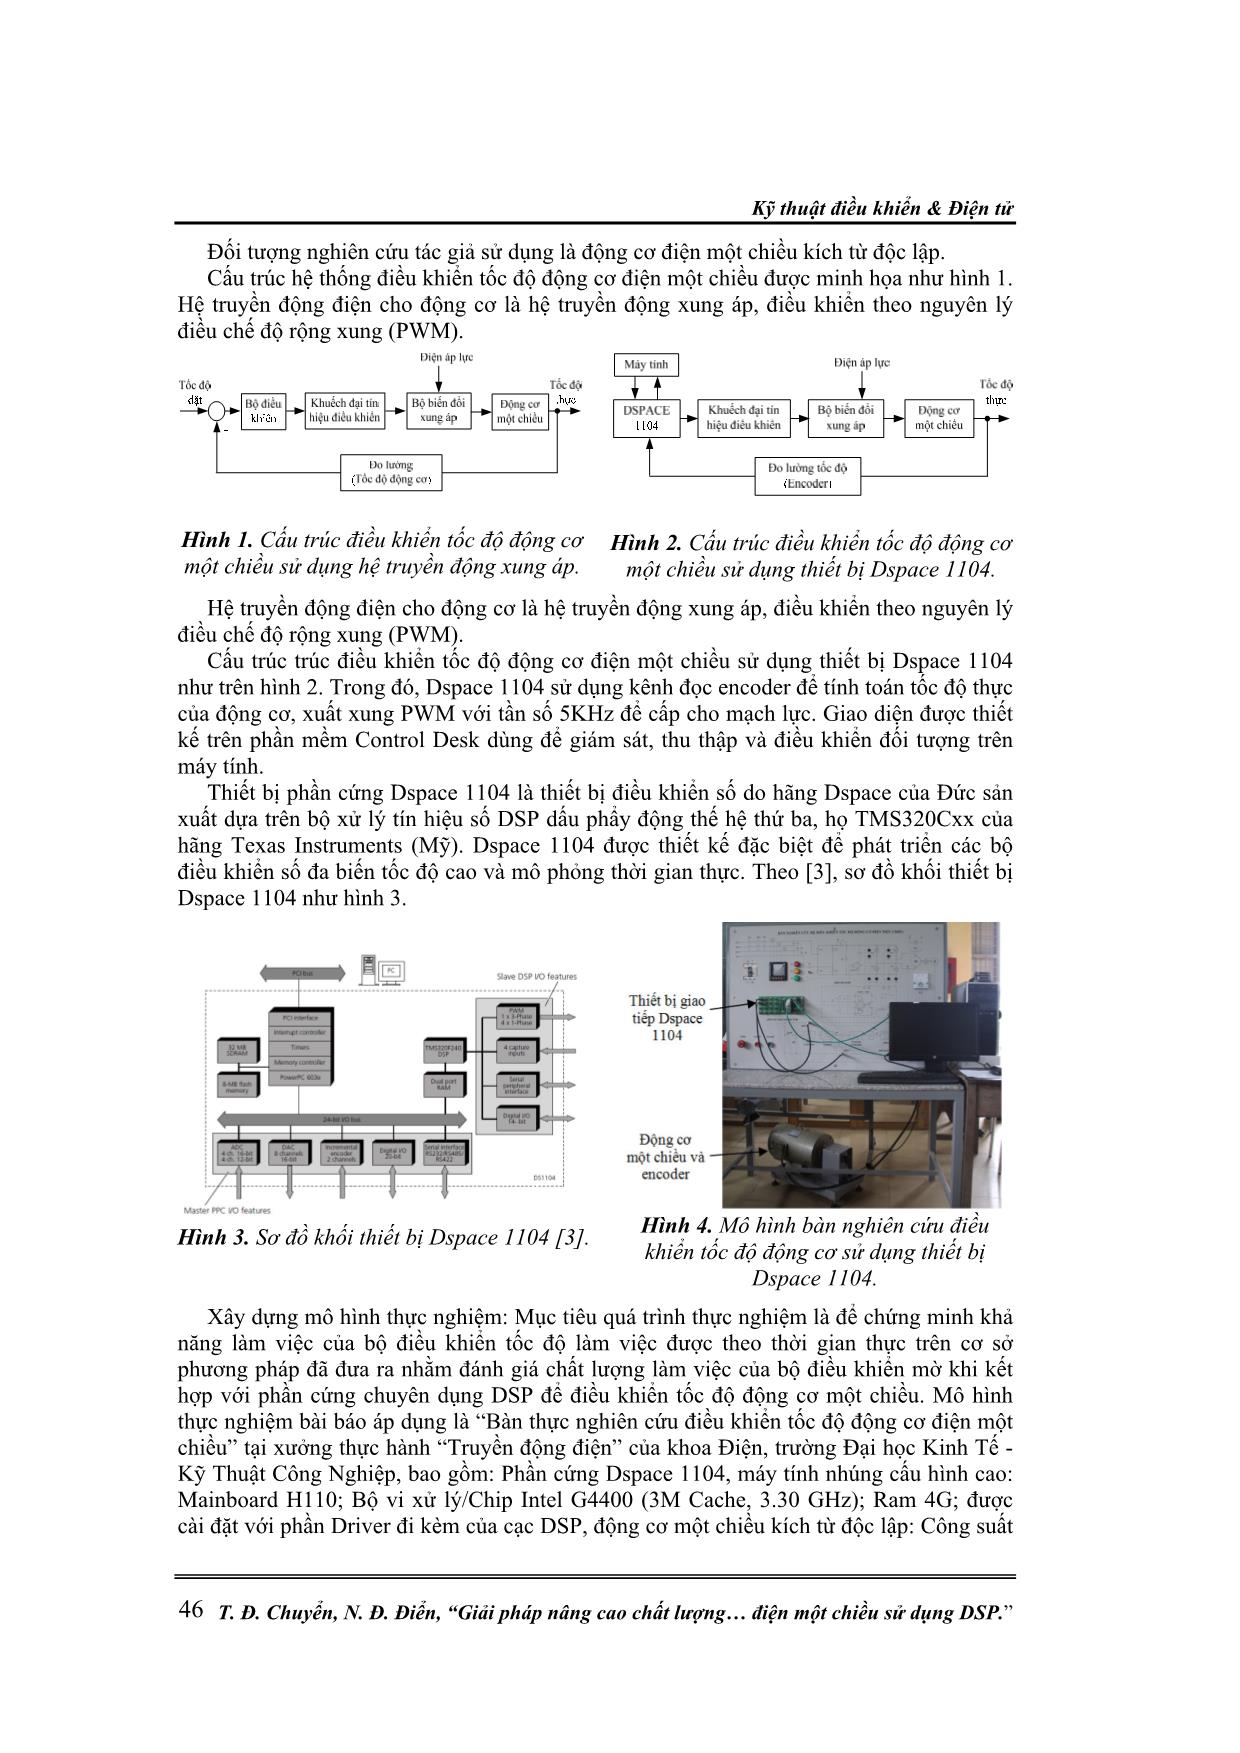 Giải pháp nâng cao chất lượng điều khiển động cơ điện một chiều sử dụng DSP trang 2